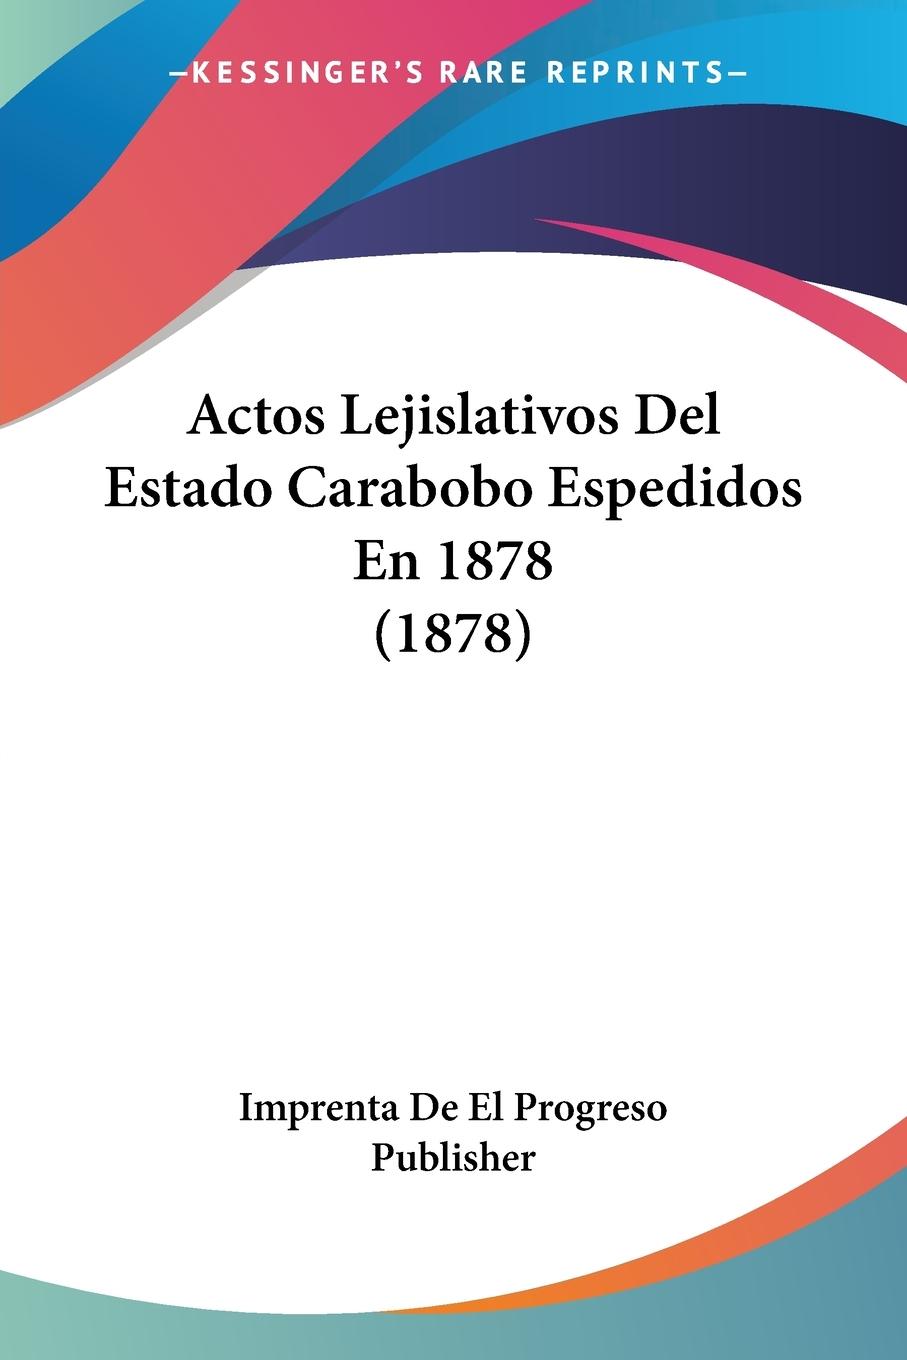 Actos Lejislativos Del Estado Carabobo Espedidos En 1878 (1878) - Imprenta De El Progreso Publisher